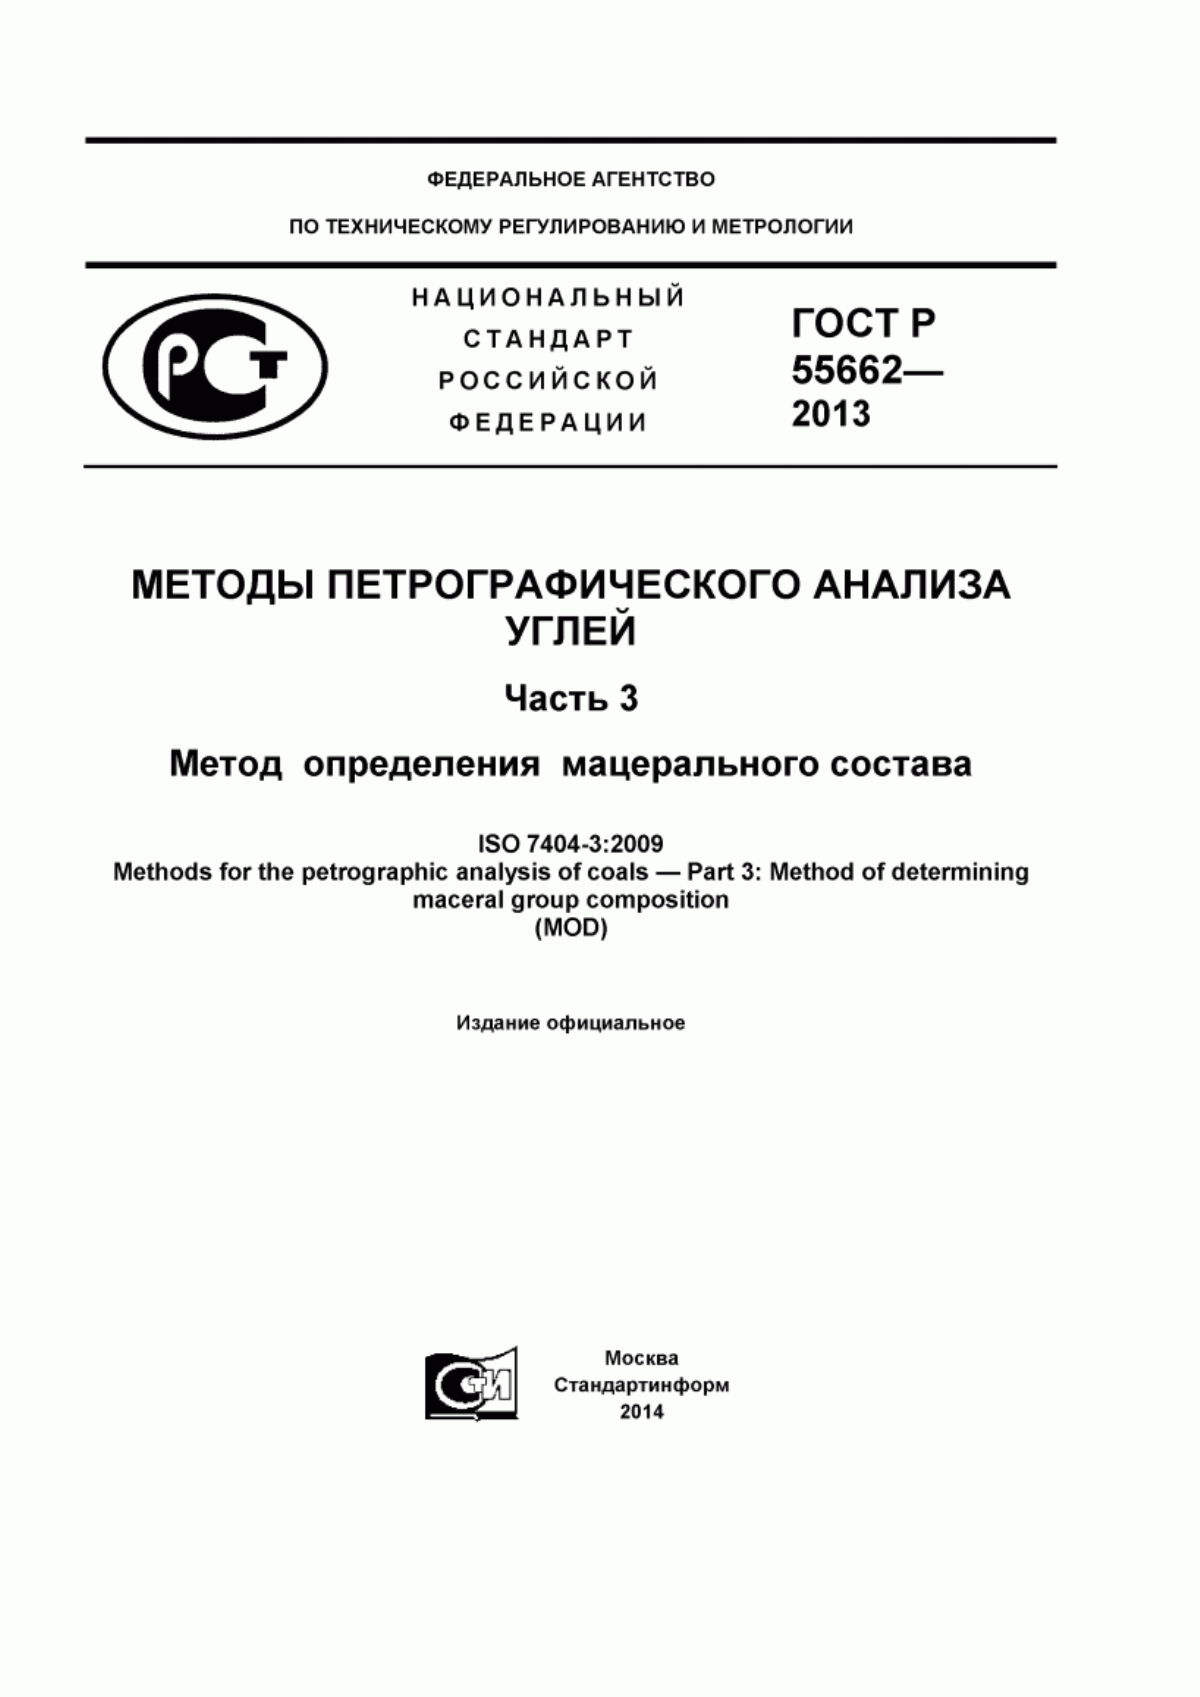 ГОСТ Р 55662-2013 Методы петрографического анализа углей. Часть 3. Метод определения мацерального состава